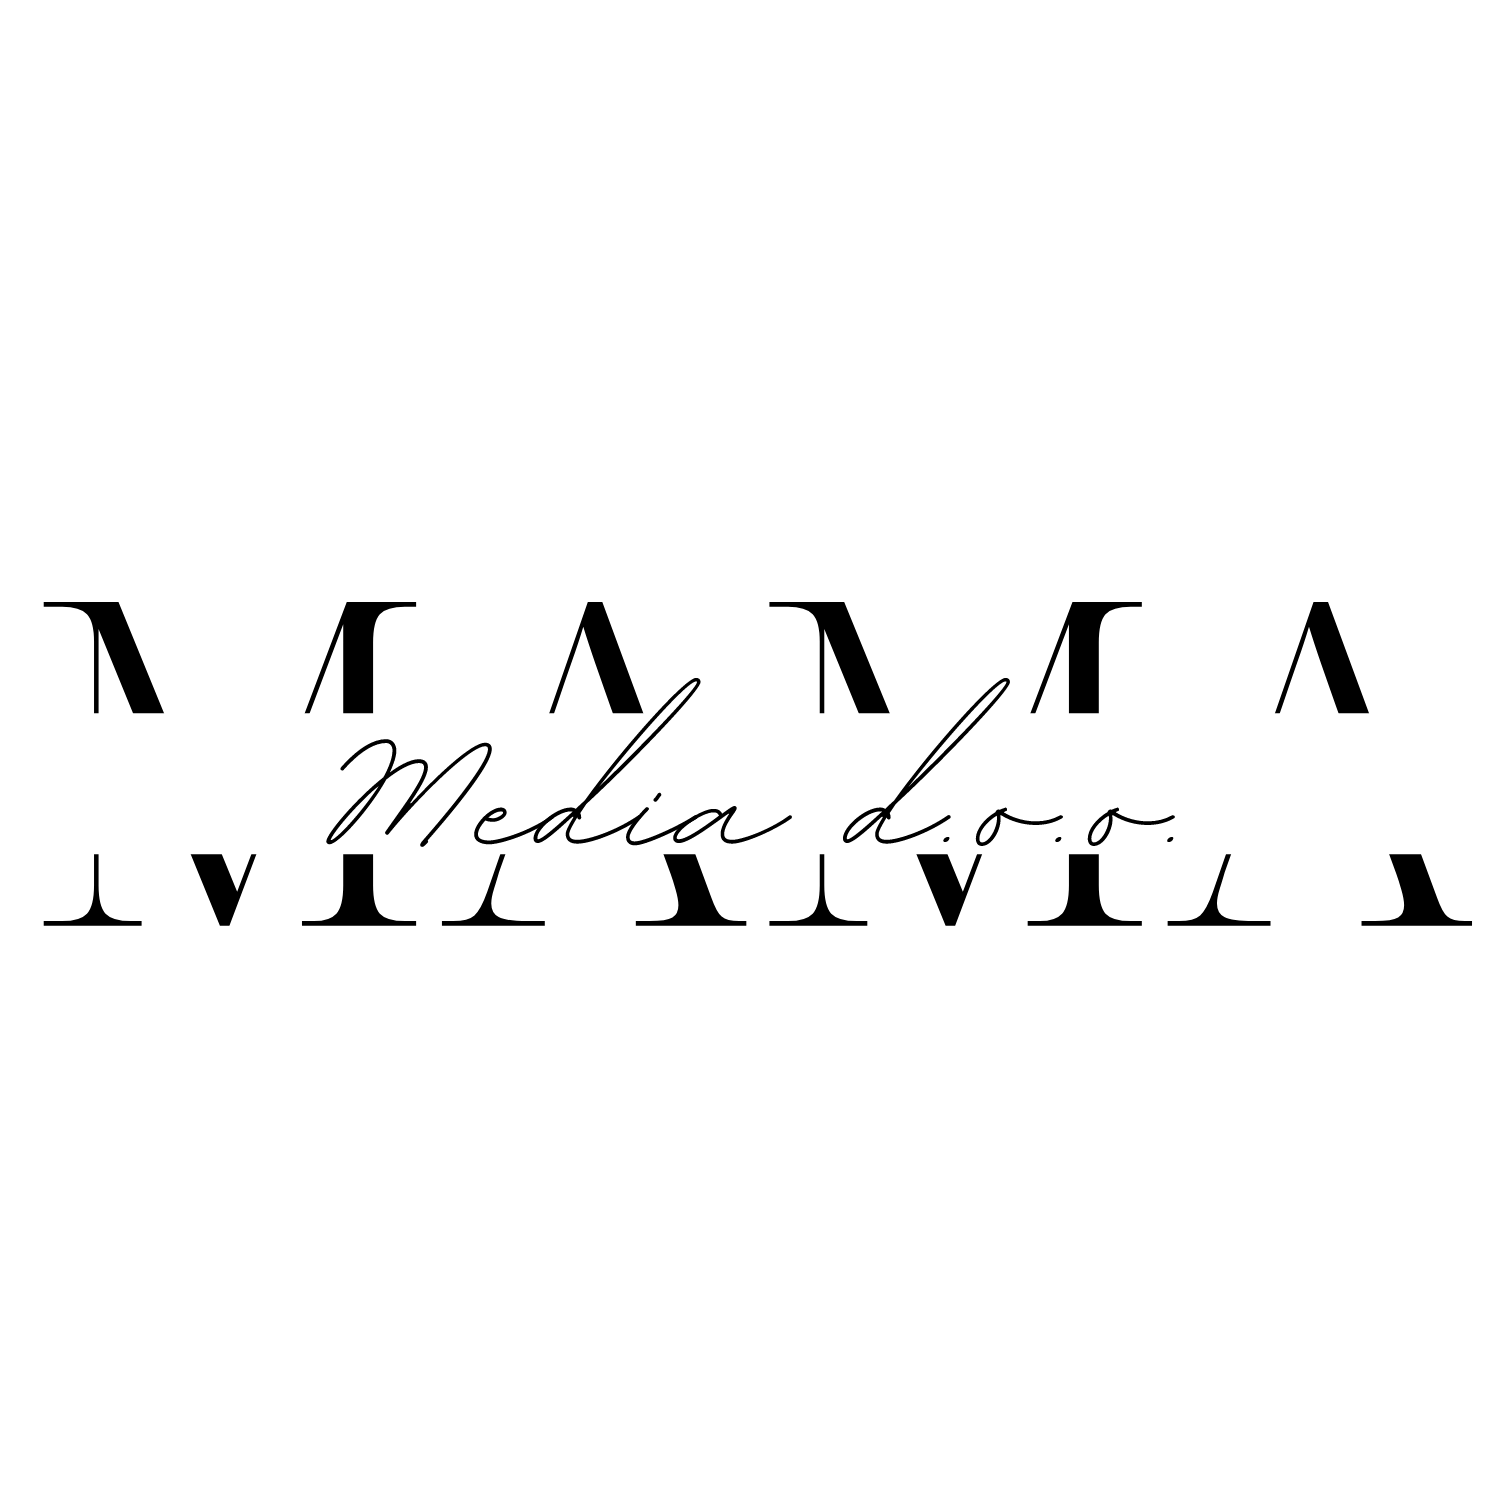 Mama media logo